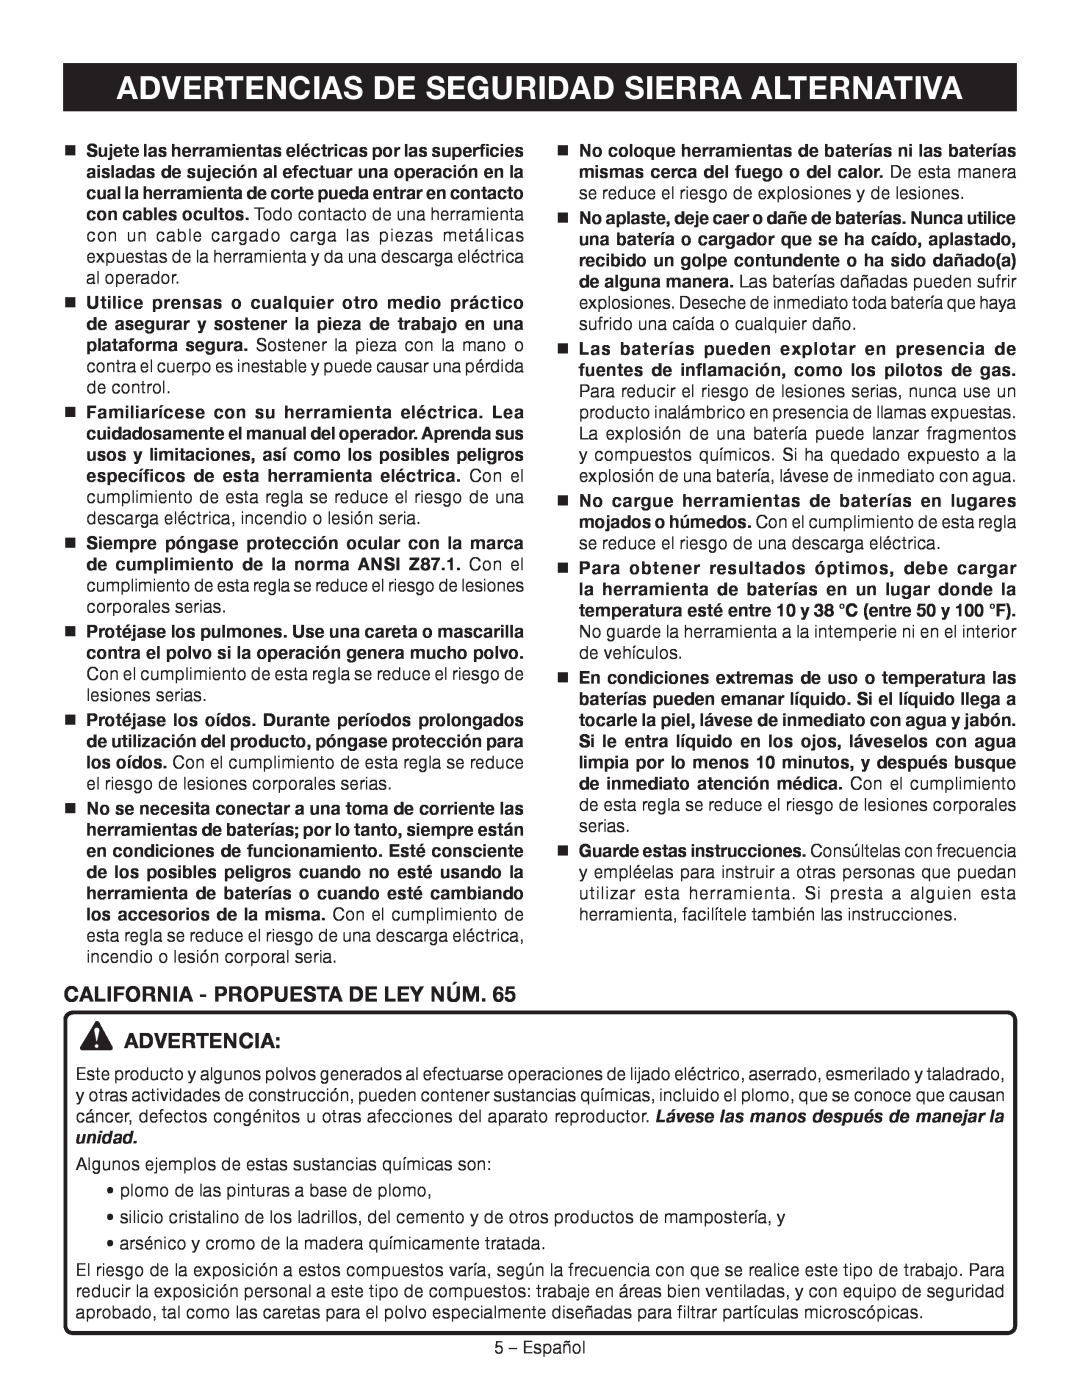 Ryobi P514 manuel dutilisation Advertencias De Seguridad Sierra Alternativa, California - Propuesta De Ley Núm. Advertencia 